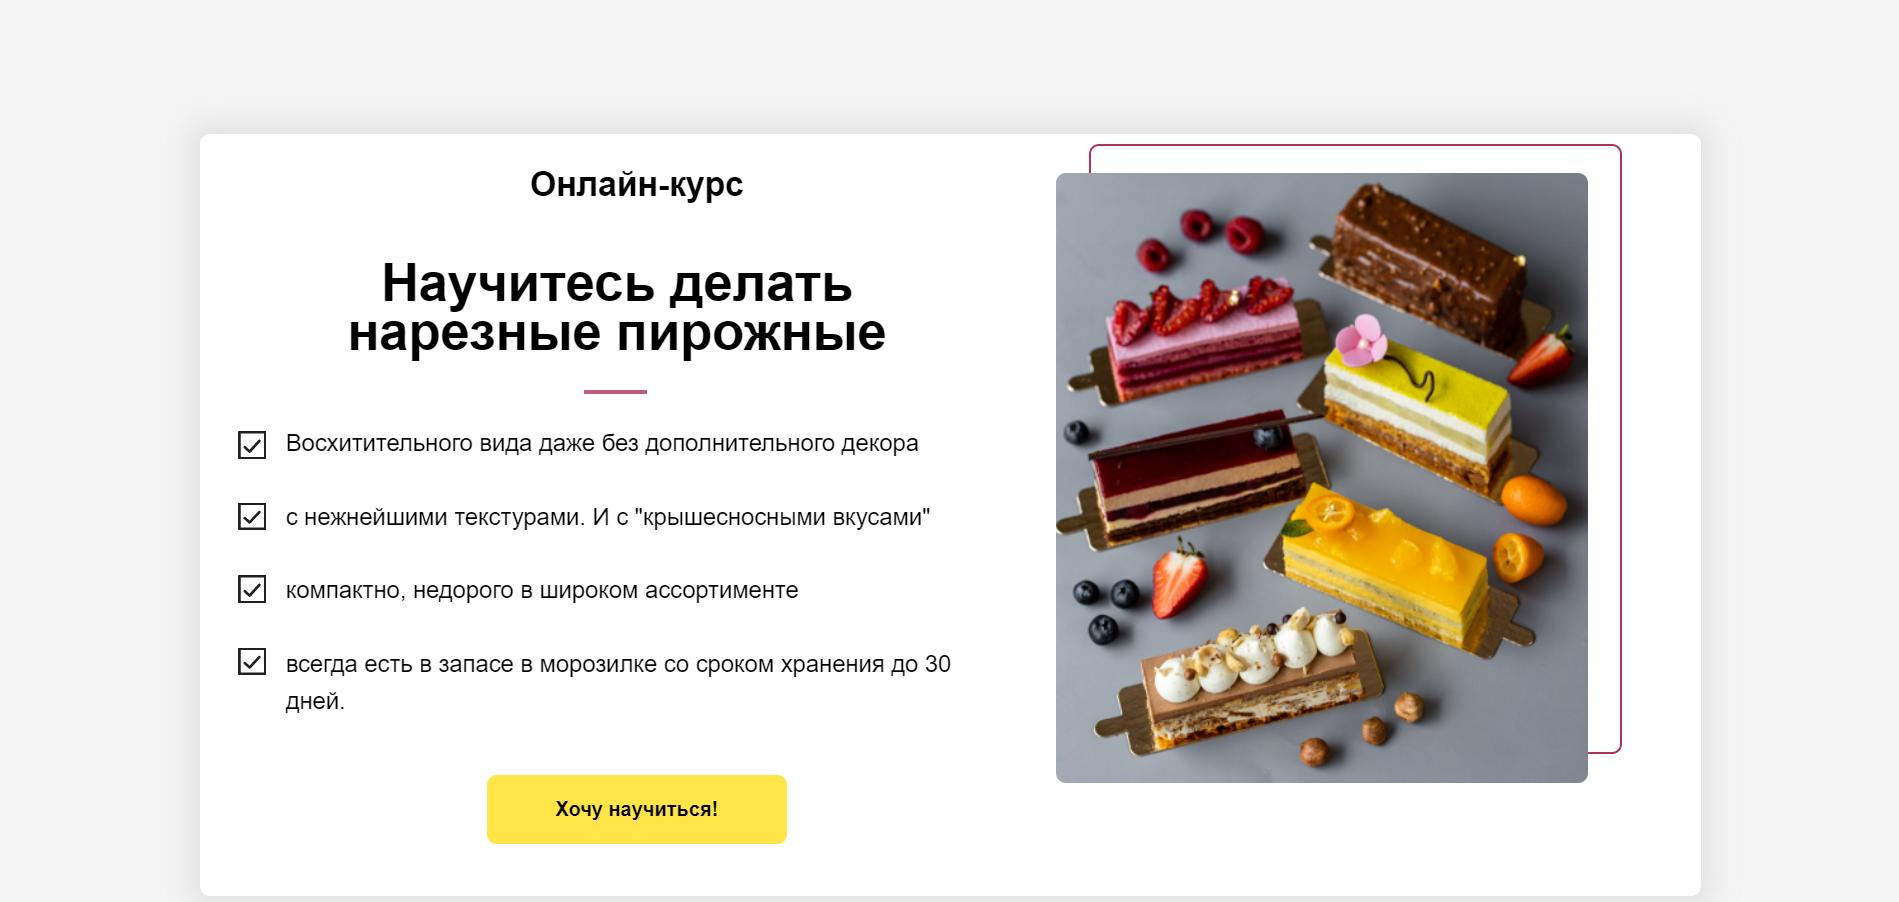 Десерты нового поколения: нарезные пирожные - Анна Гордеева